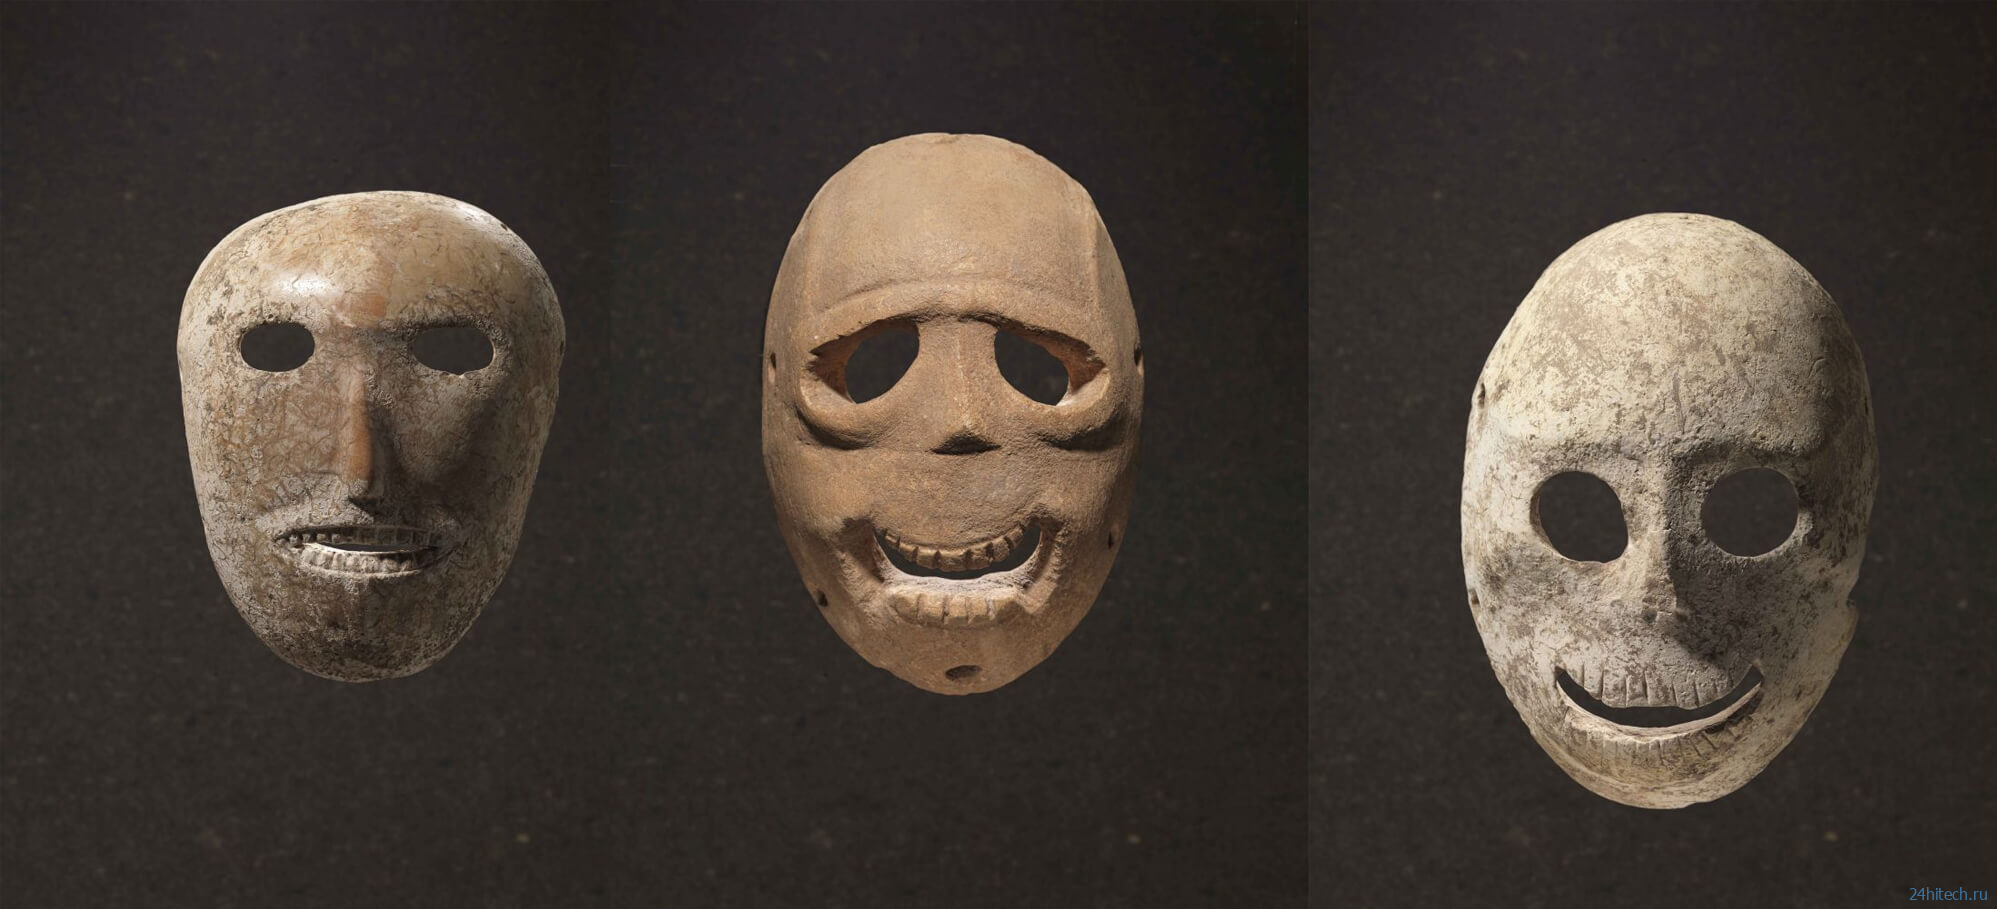 Как выглядели самые первые маски в истории? 